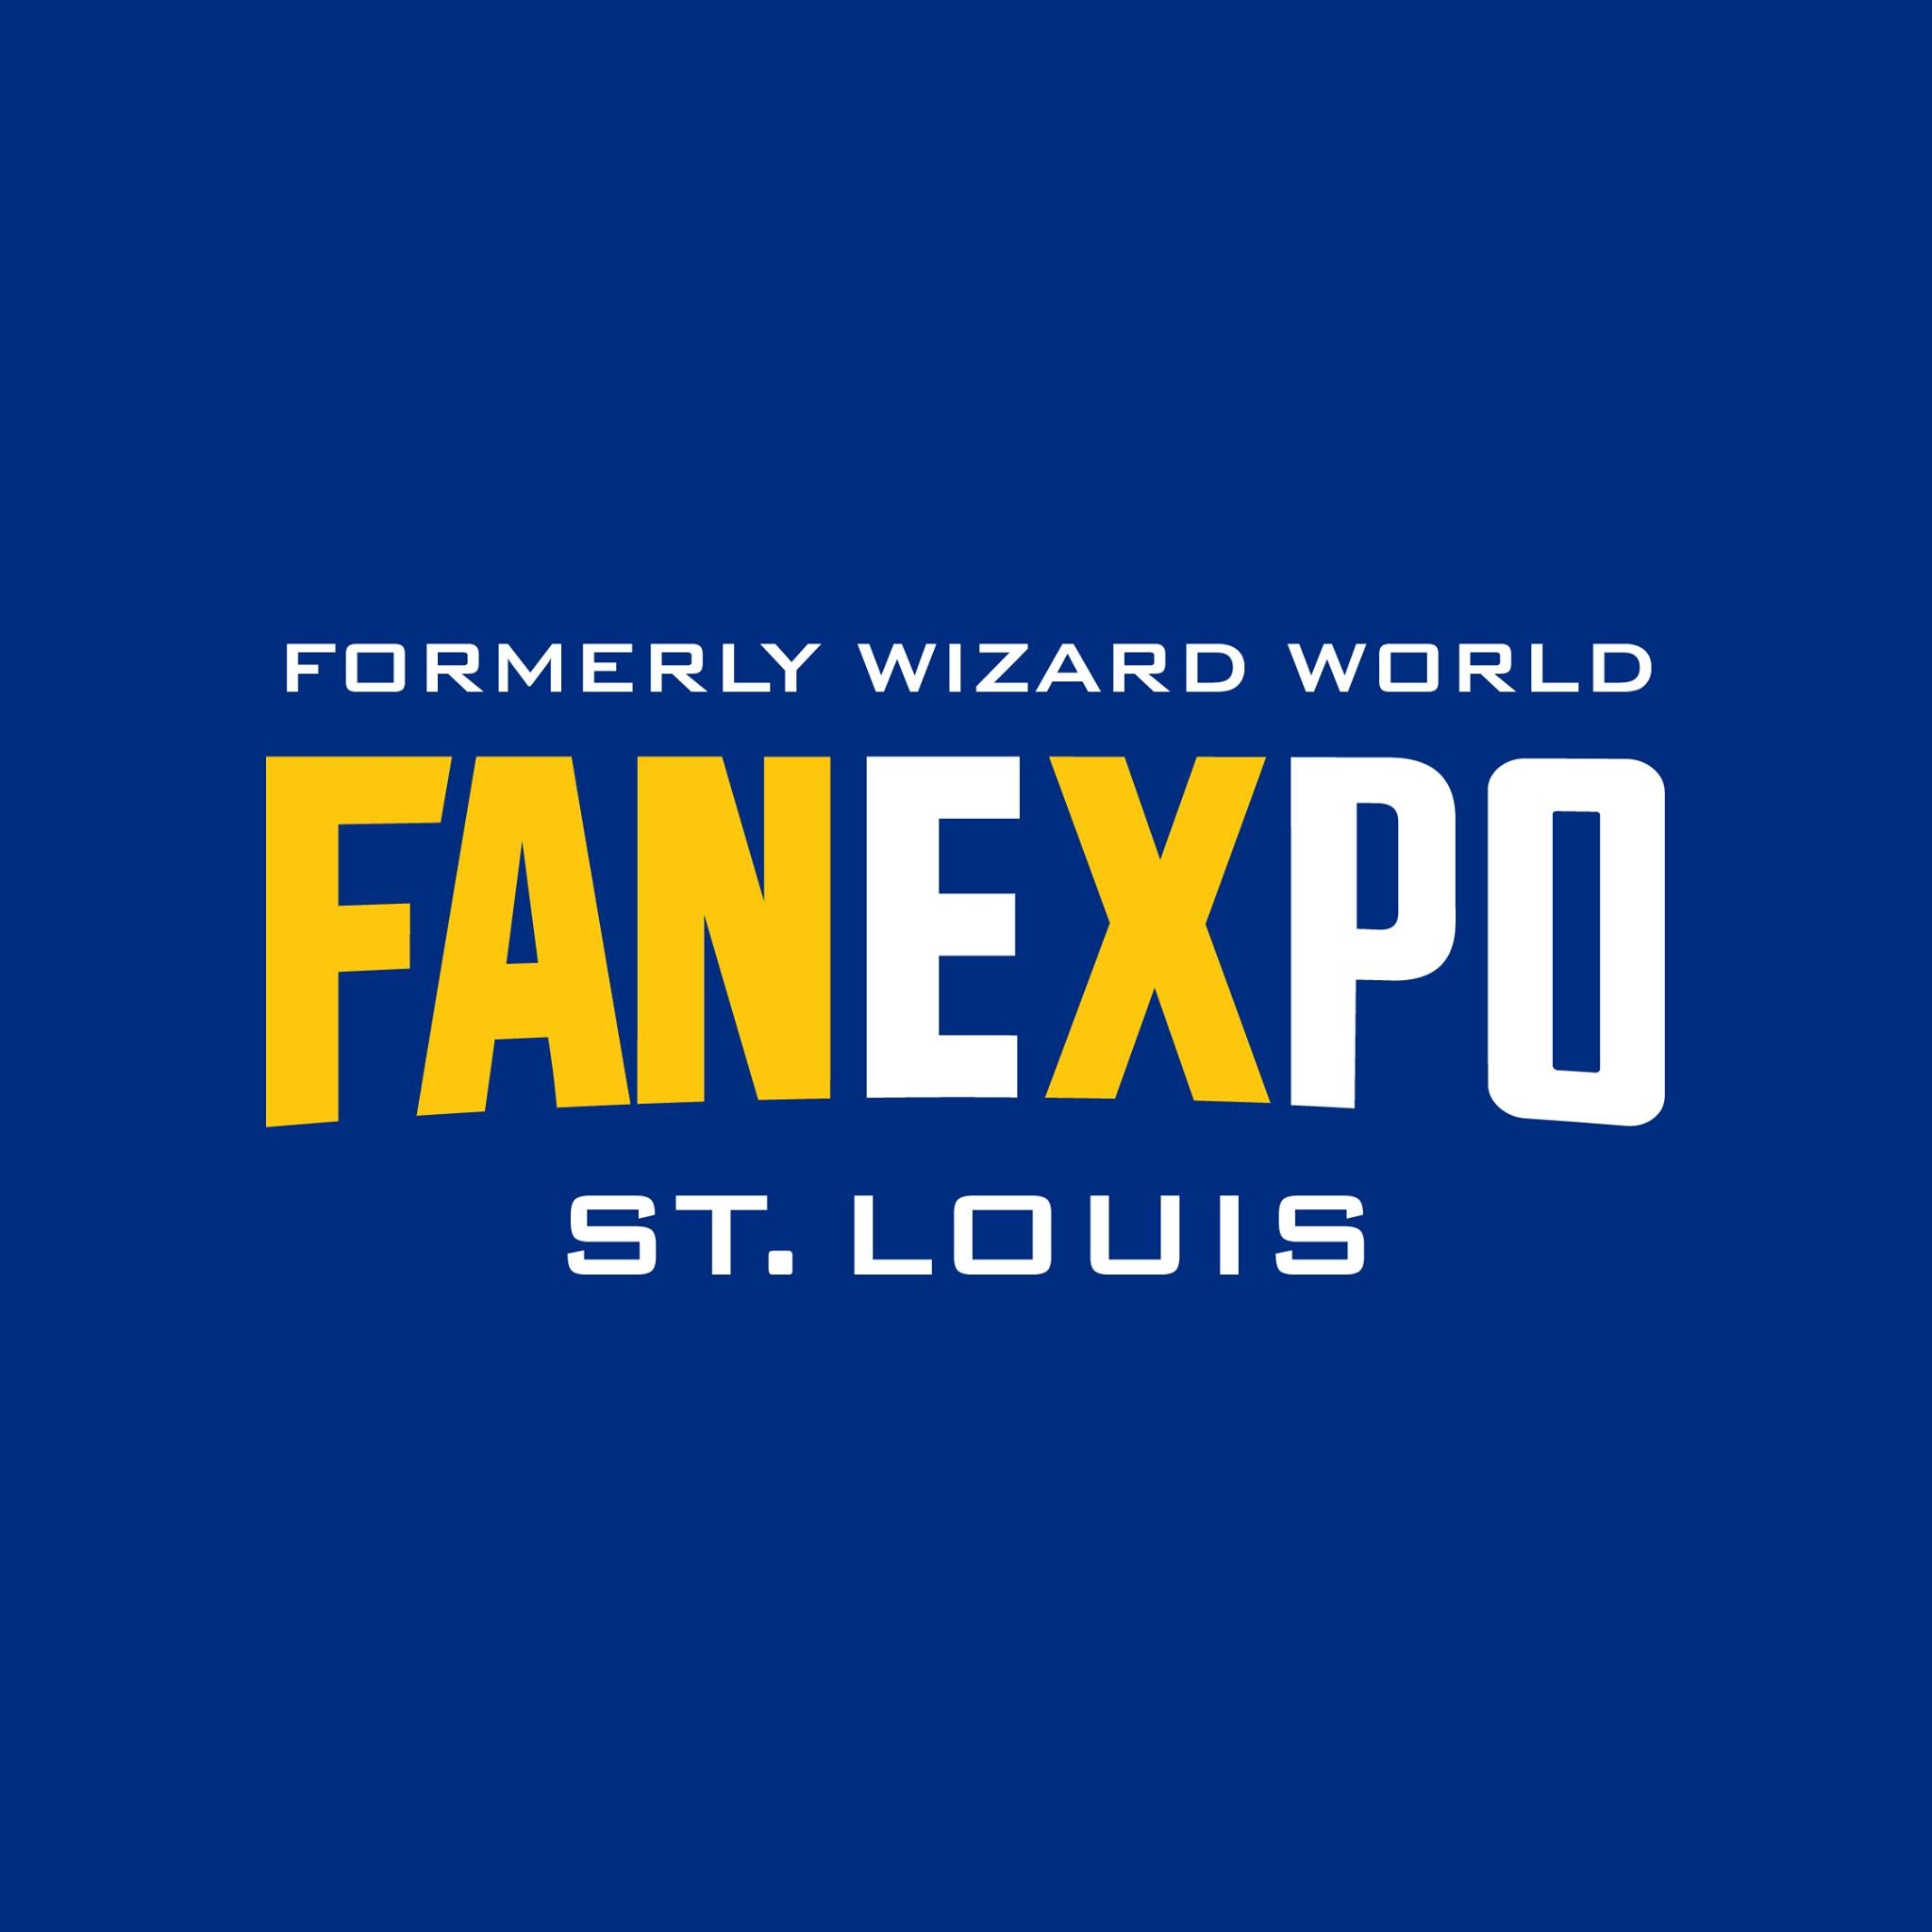 FAN EXPO St. Louis